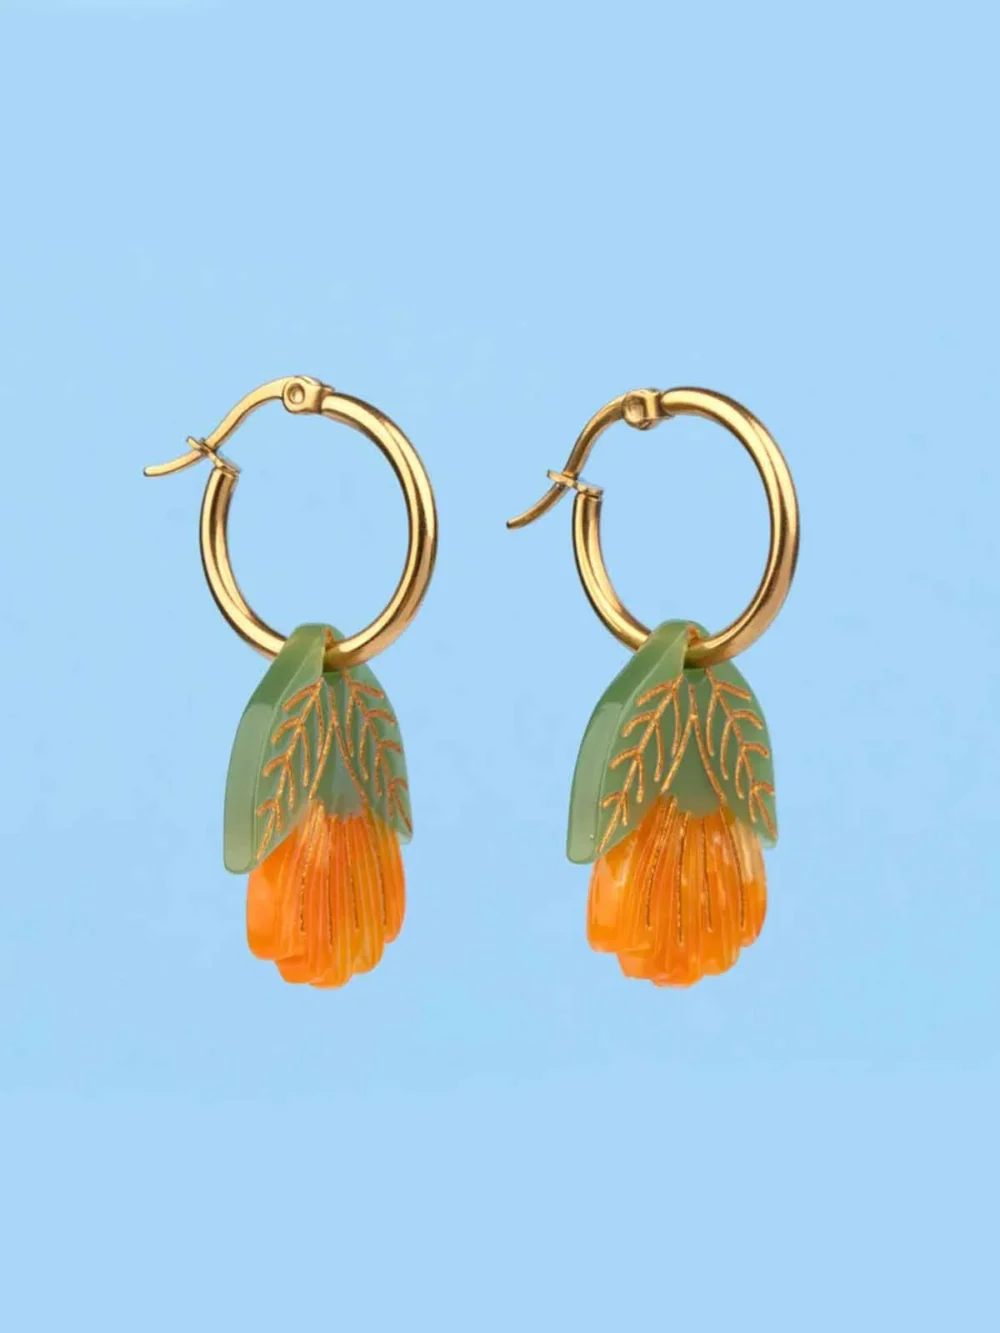 øreringe med morgenfrue i orange farver cou cou suzette